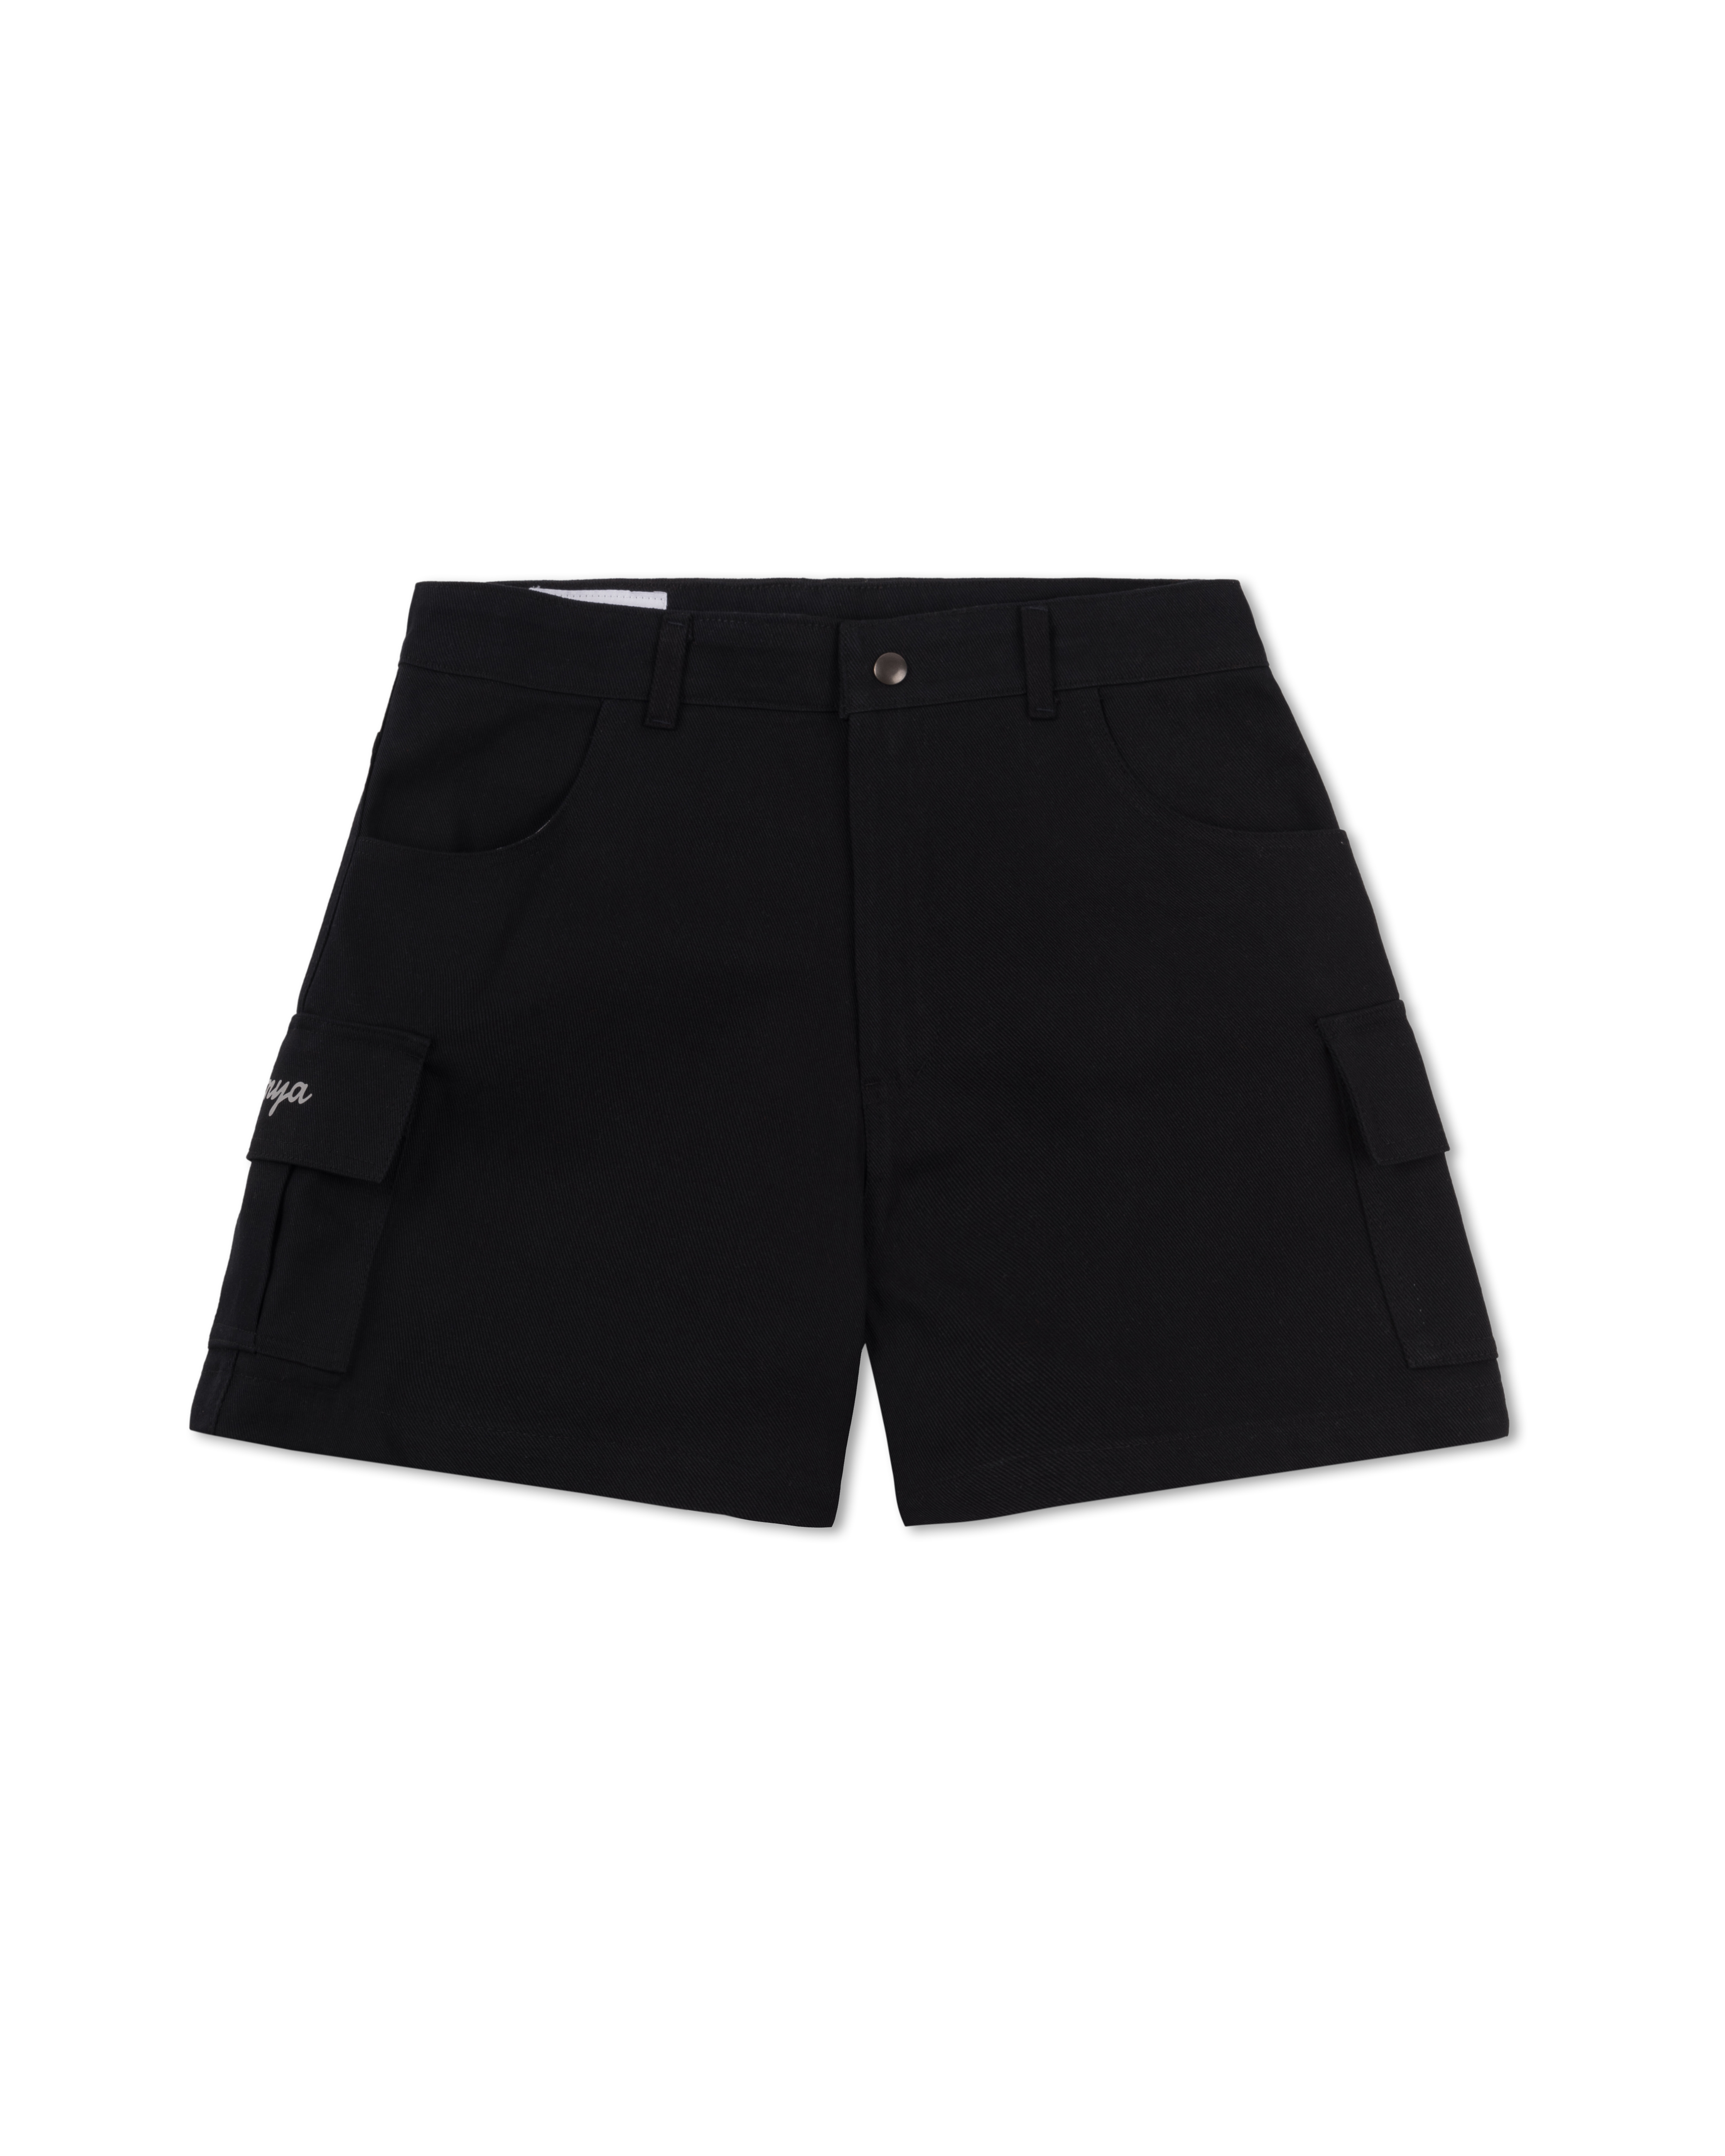 Botwood Cargo Shorts Black